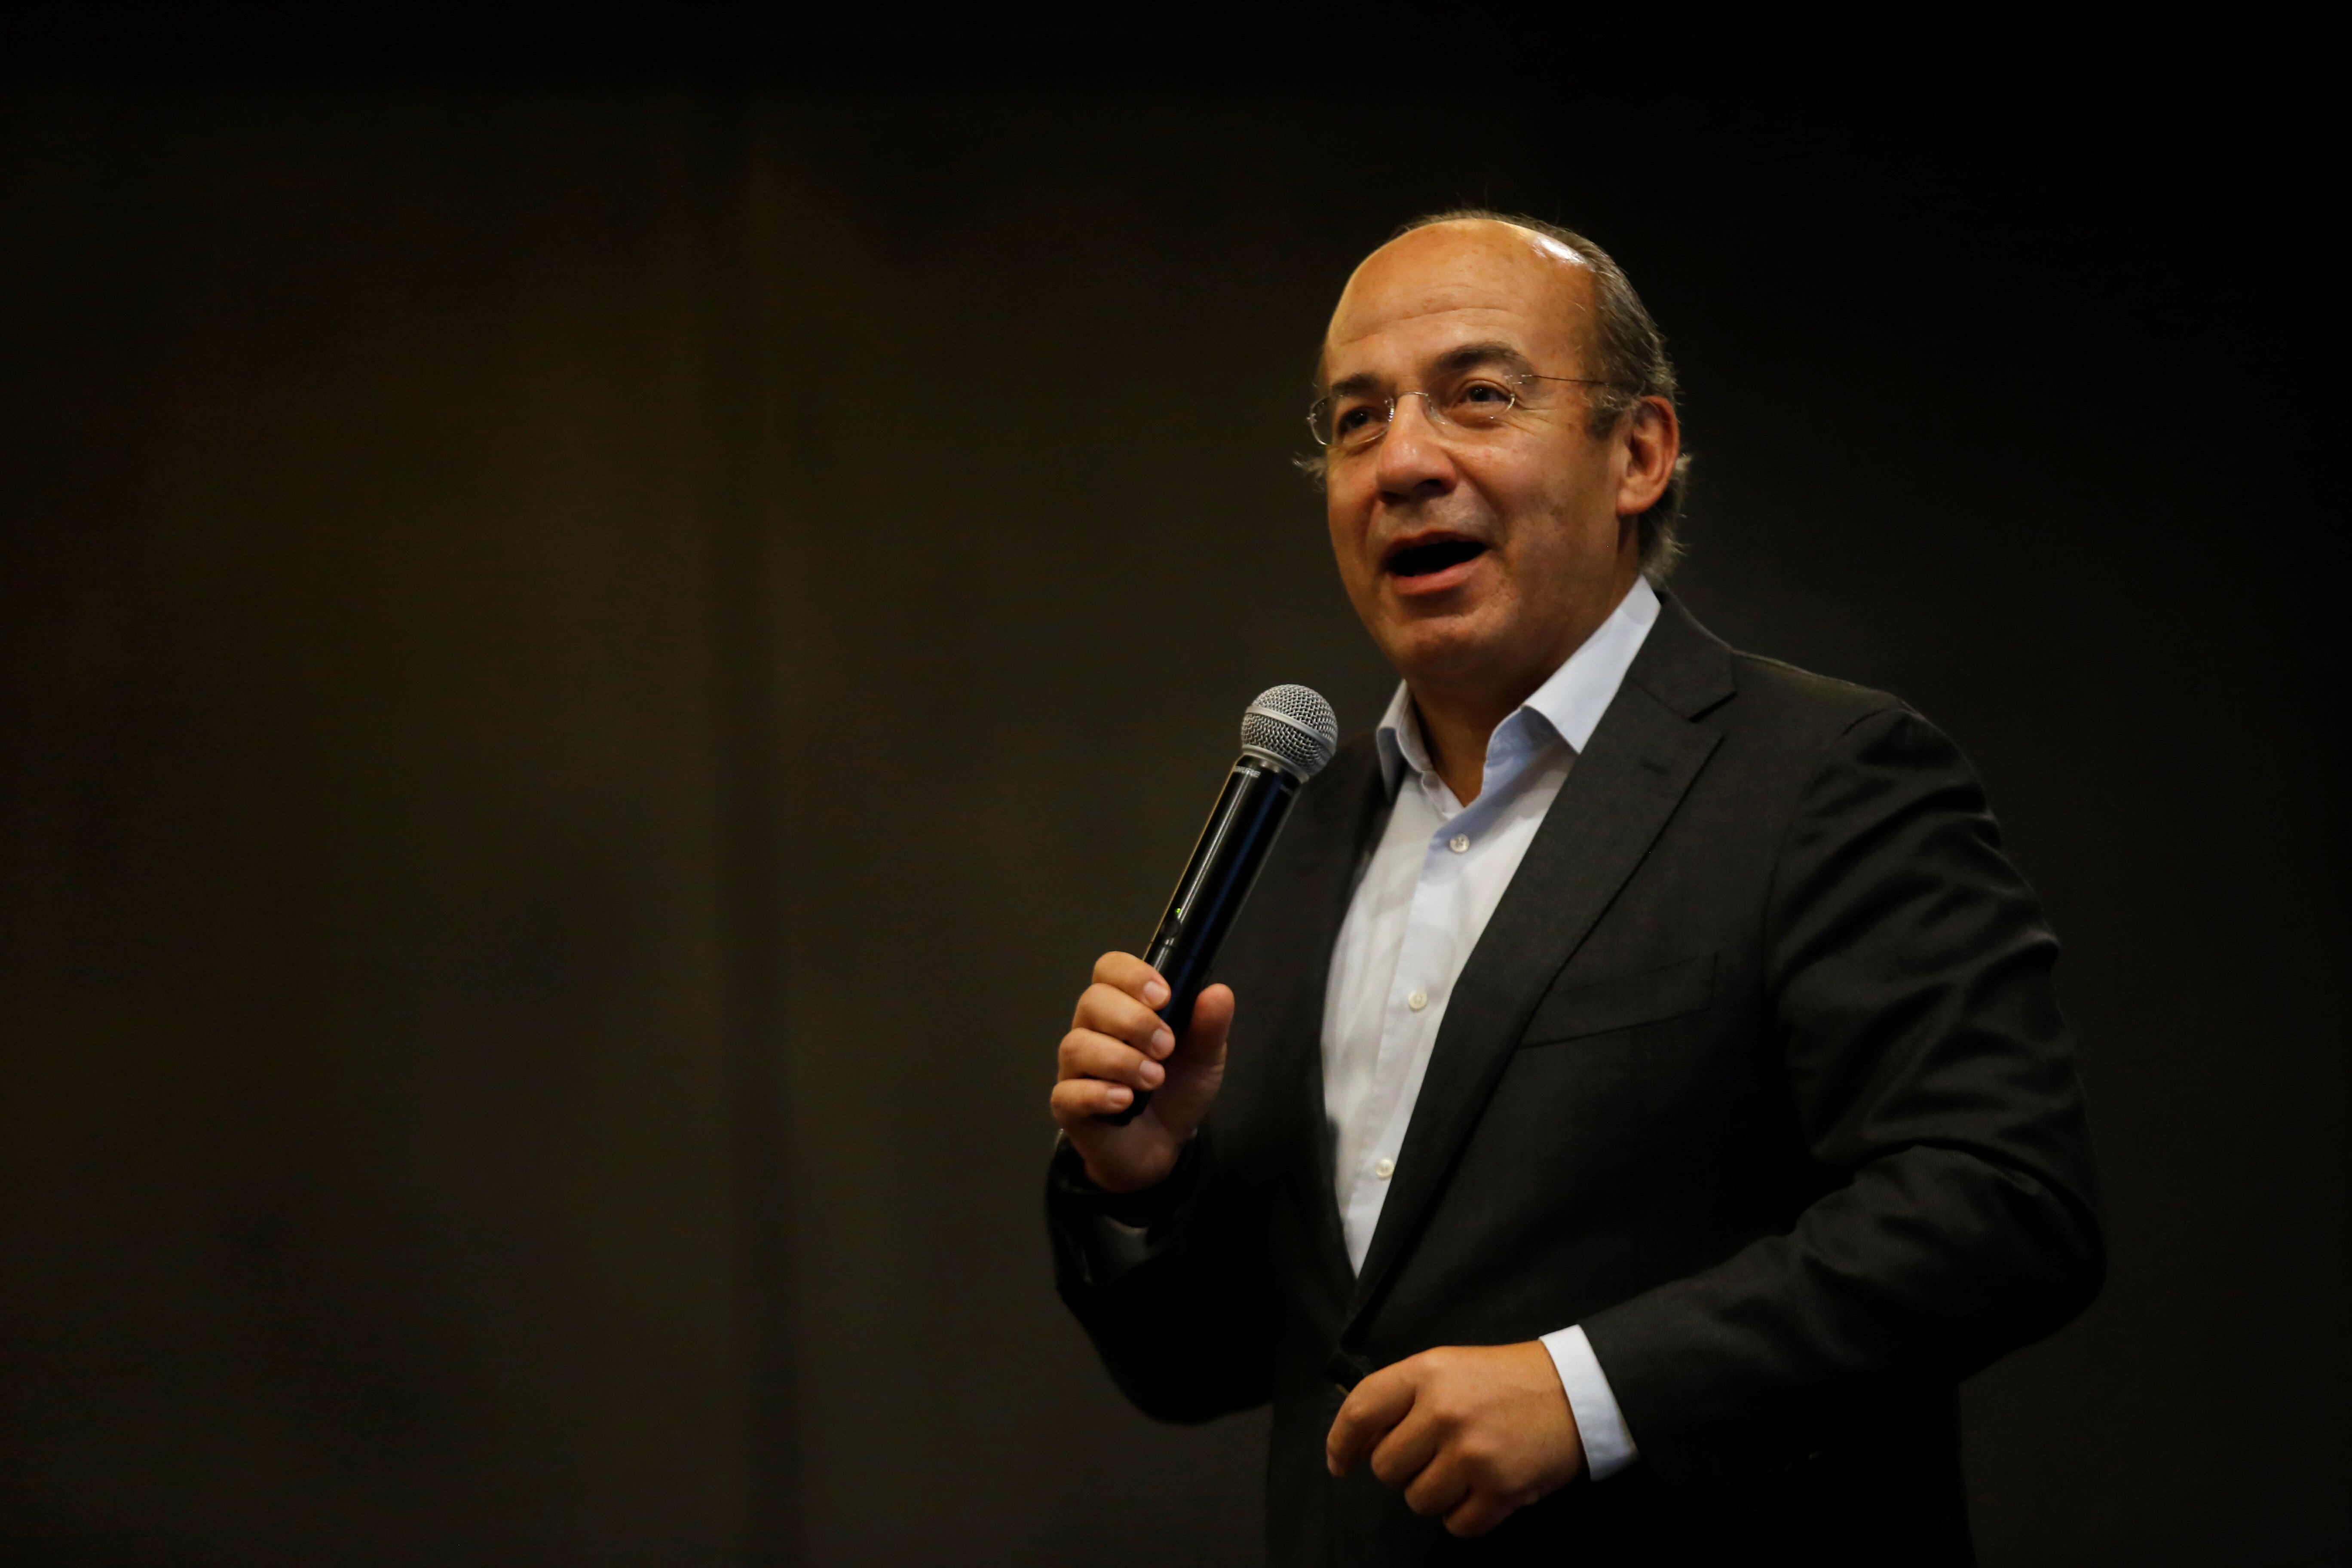 Expresidente mexicano Felipe Calderón ingresa en hospital por Covid-19